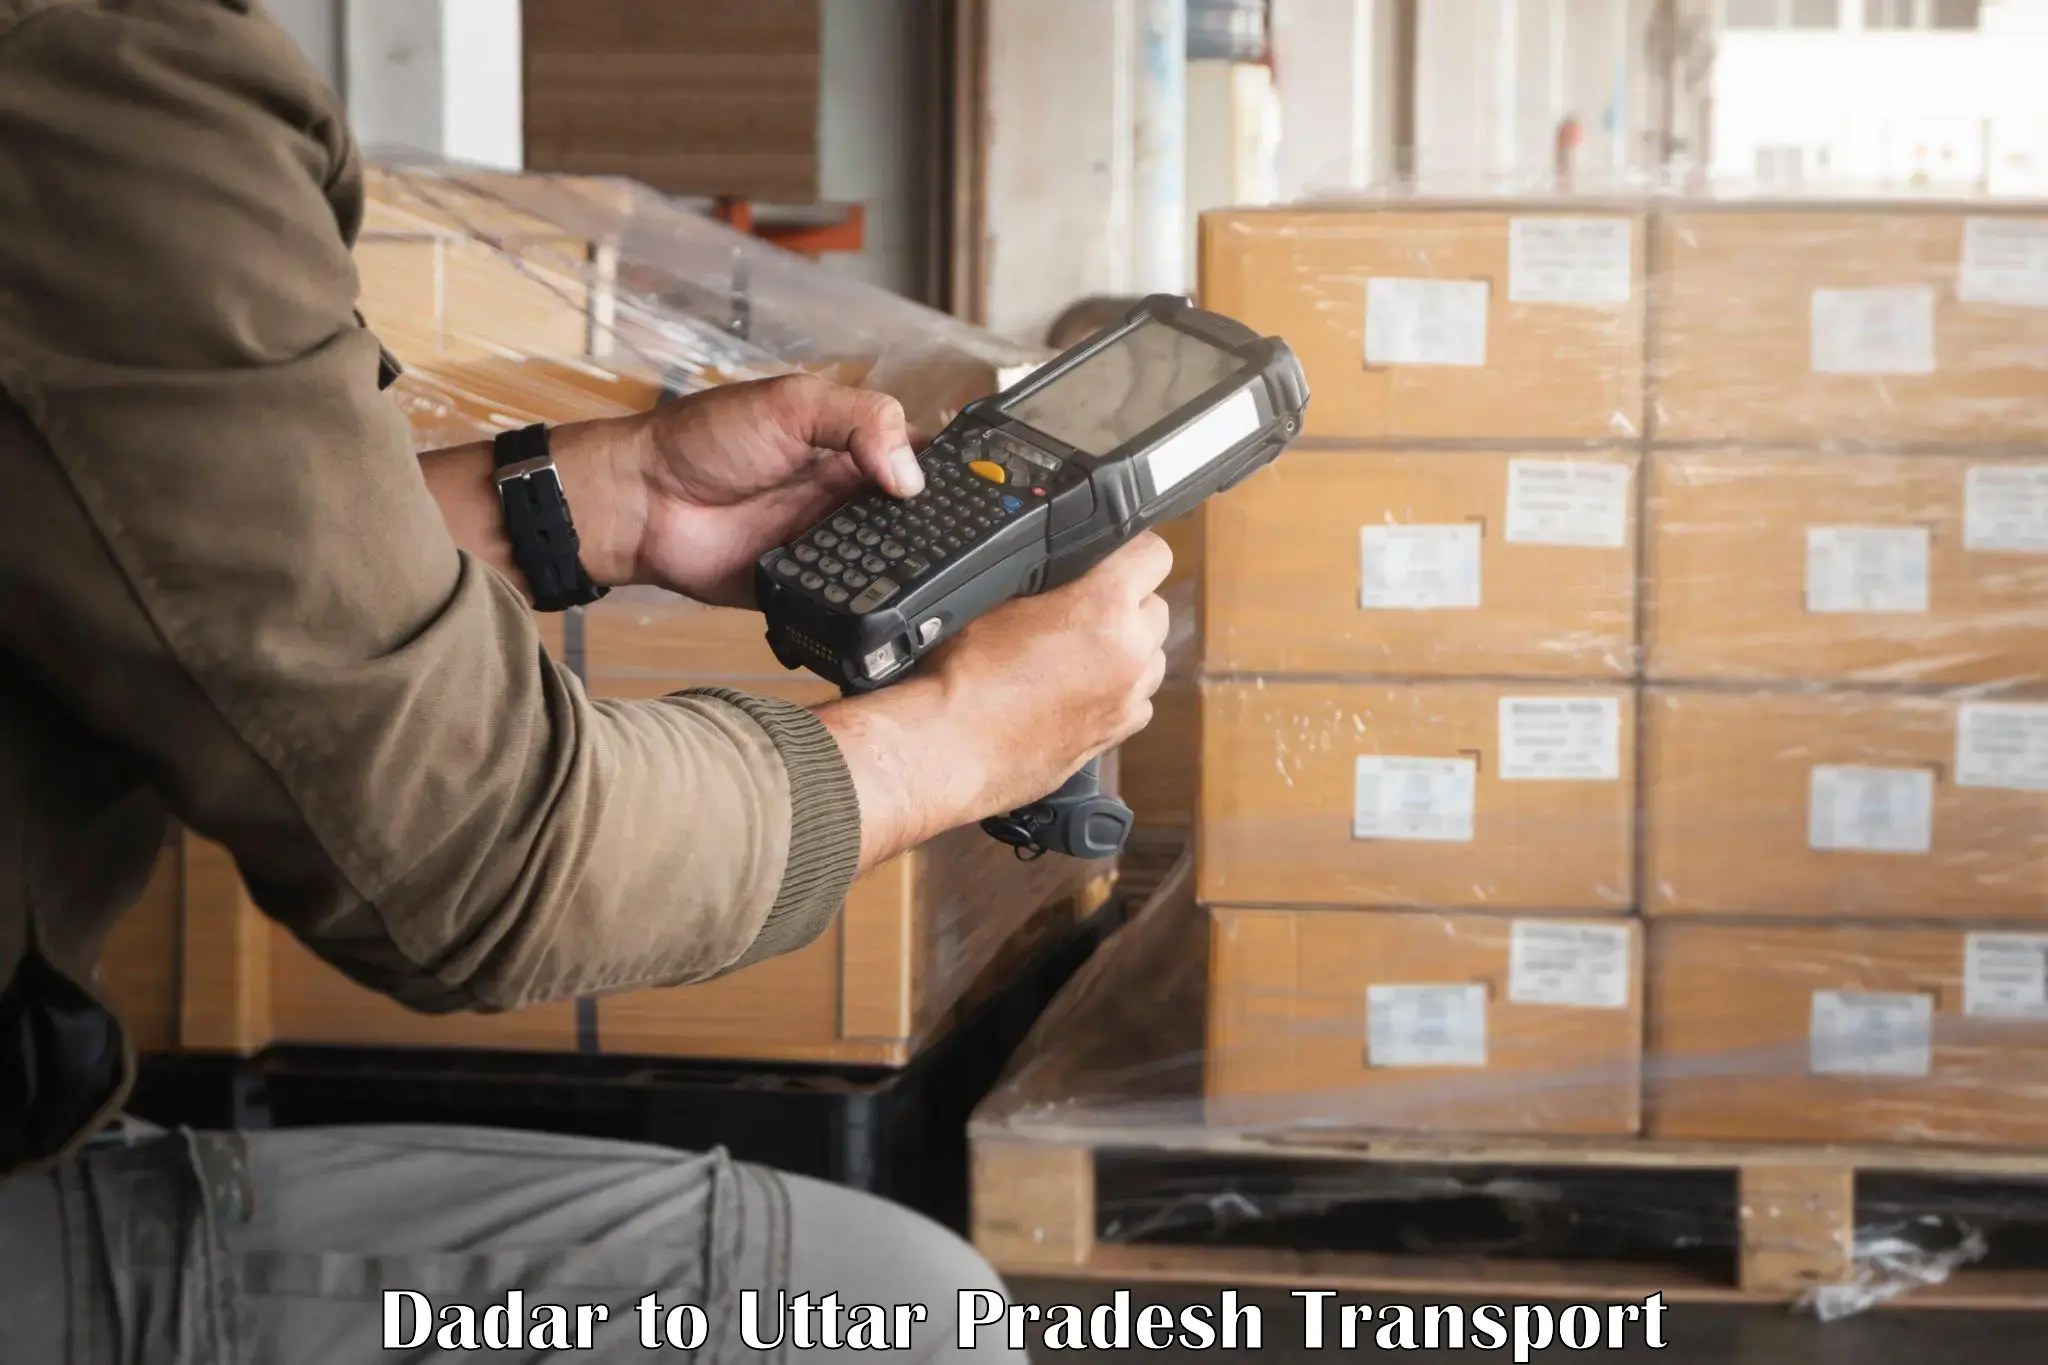 Online transport service Dadar to Kalpi